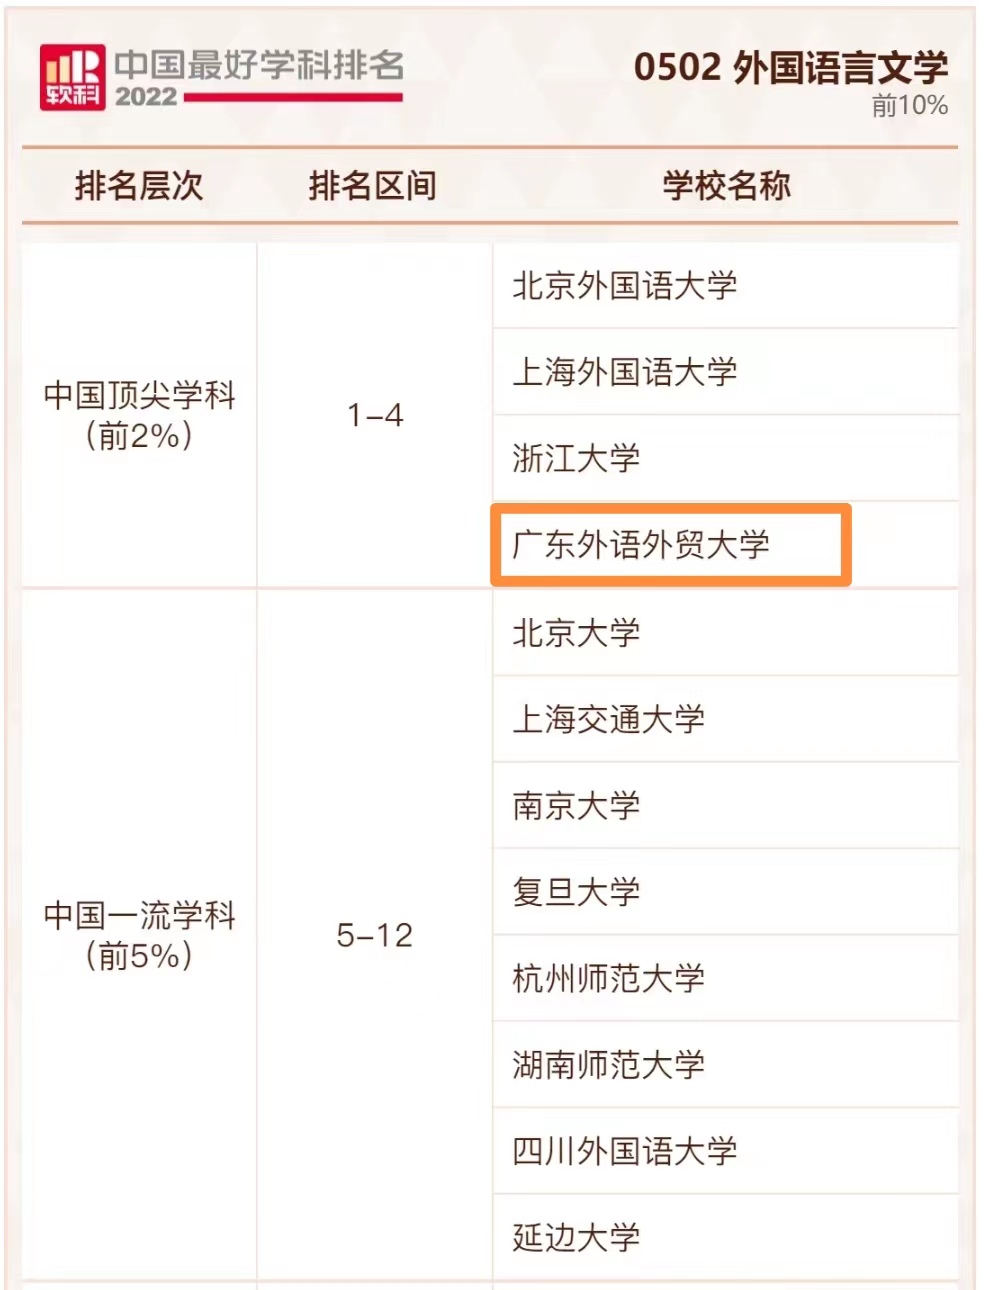 2022软科中国最好学科排名-外语顶尖学科-截图.jpg